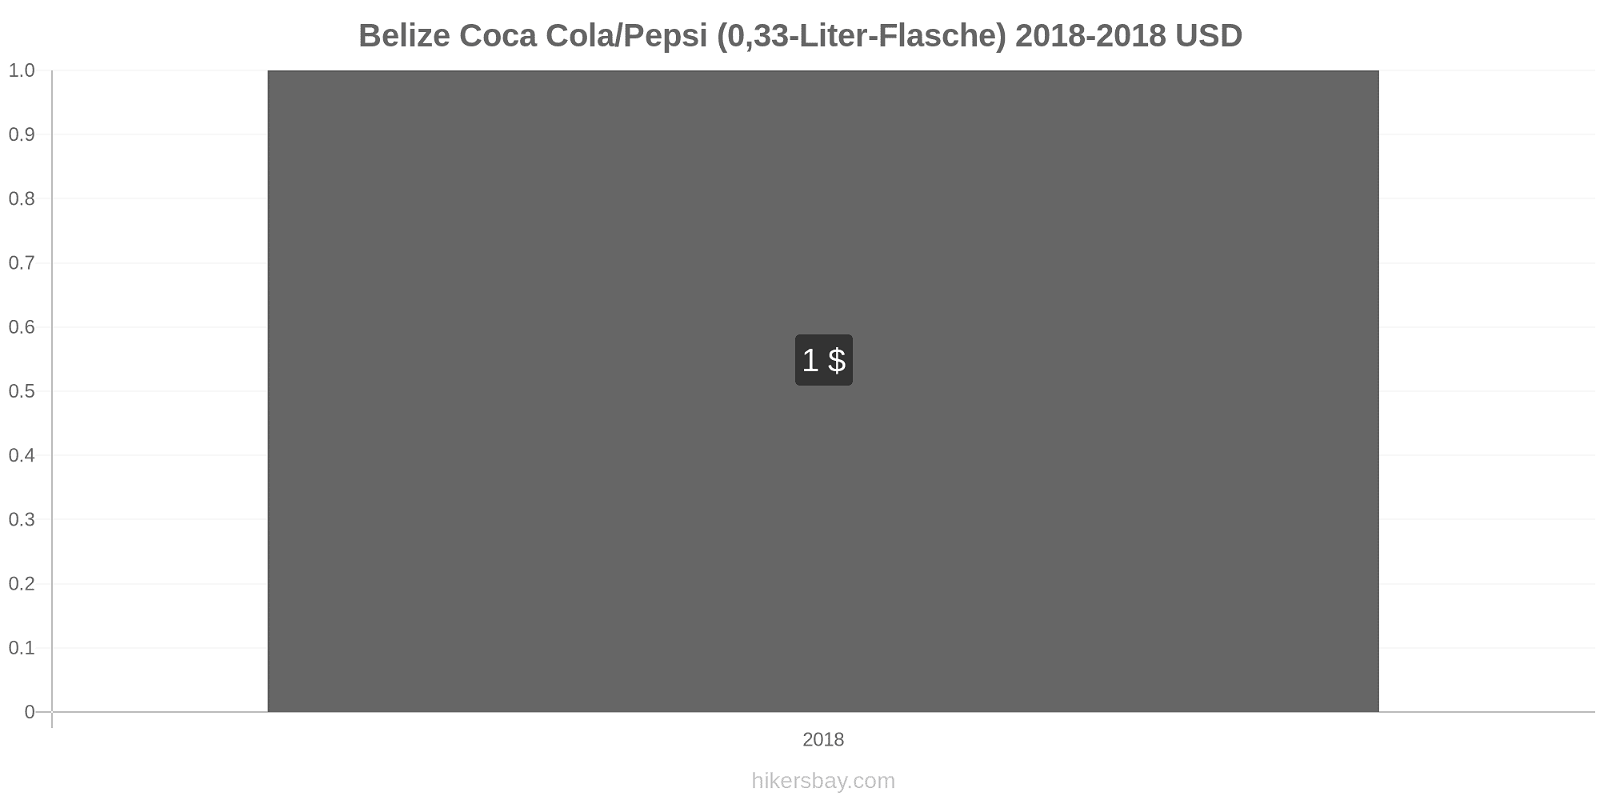 Belize Preisänderungen Coke/Pepsi (0,33-Liter-Flasche) hikersbay.com